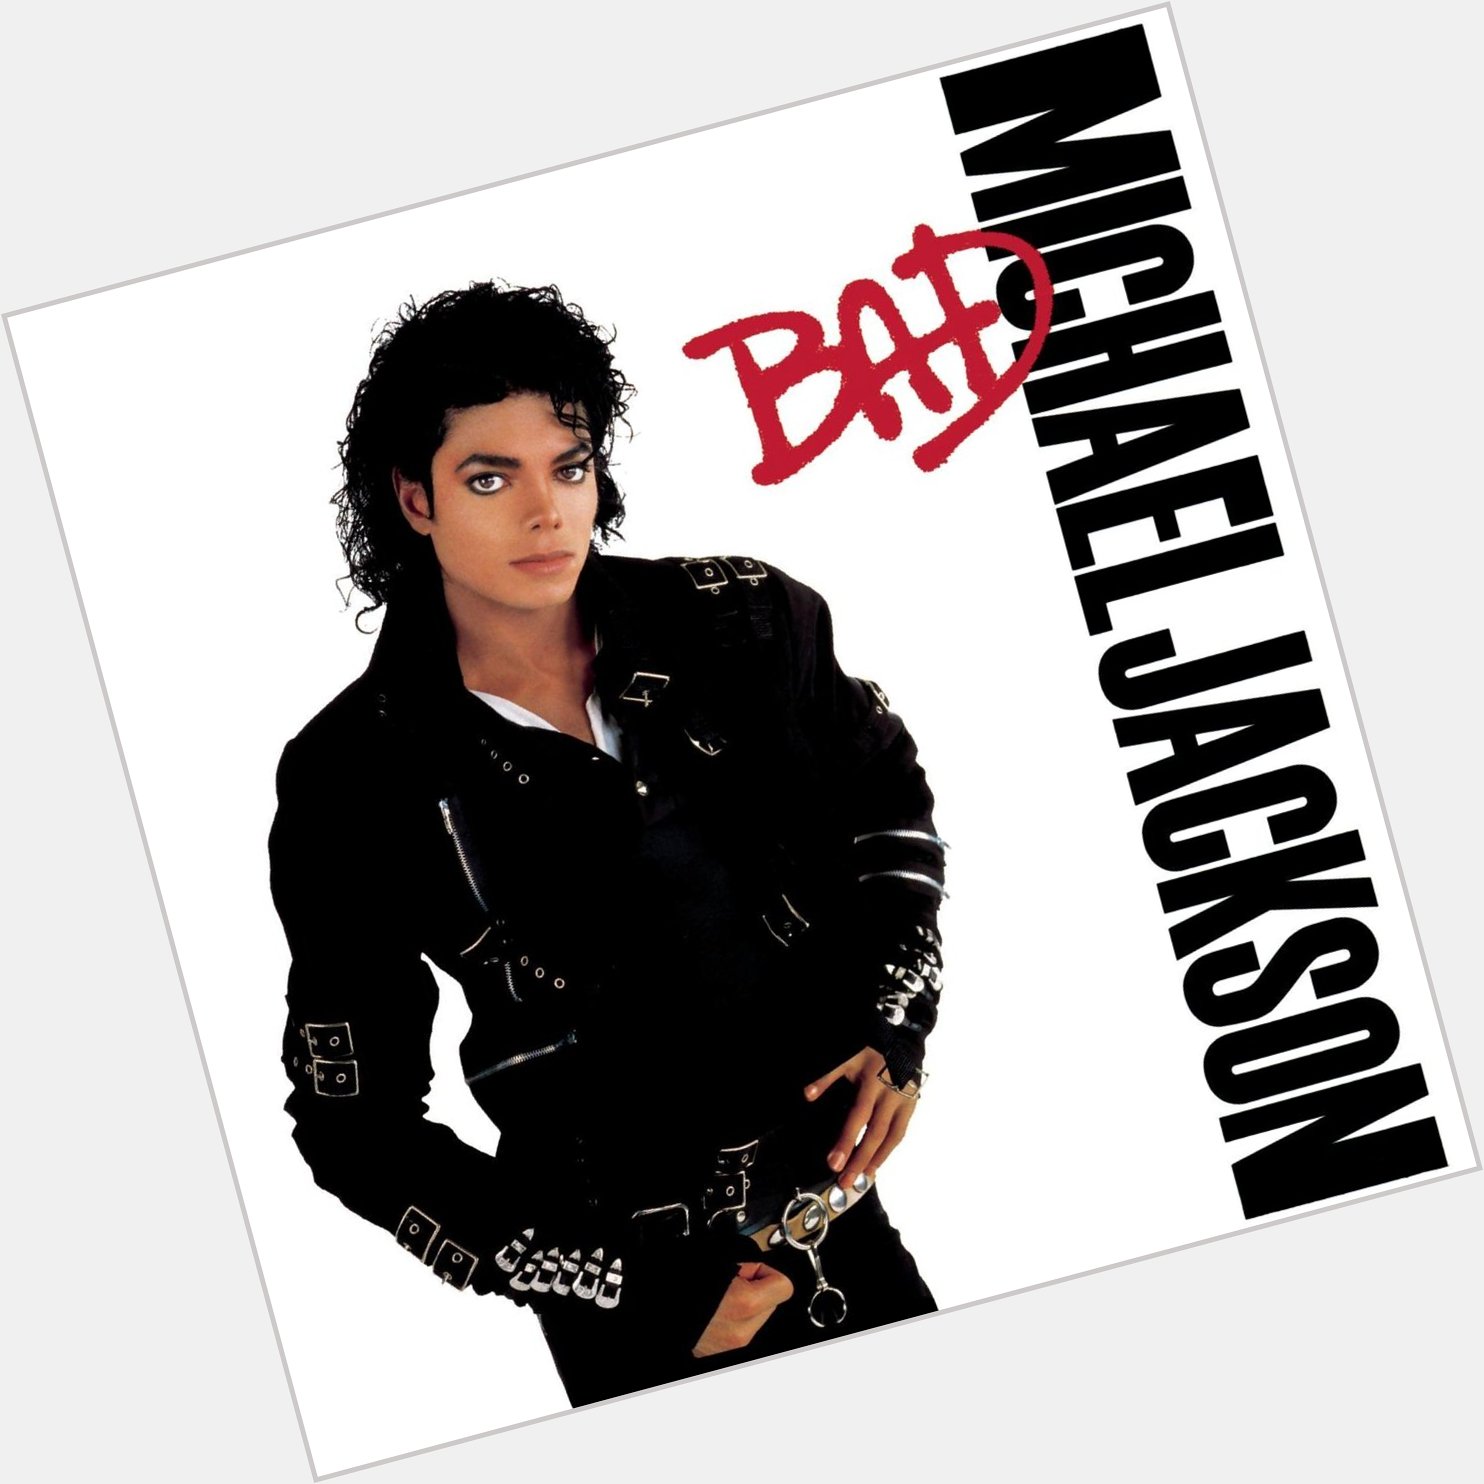 Happy Birthday to Michael Jackson\s Bad Album! 